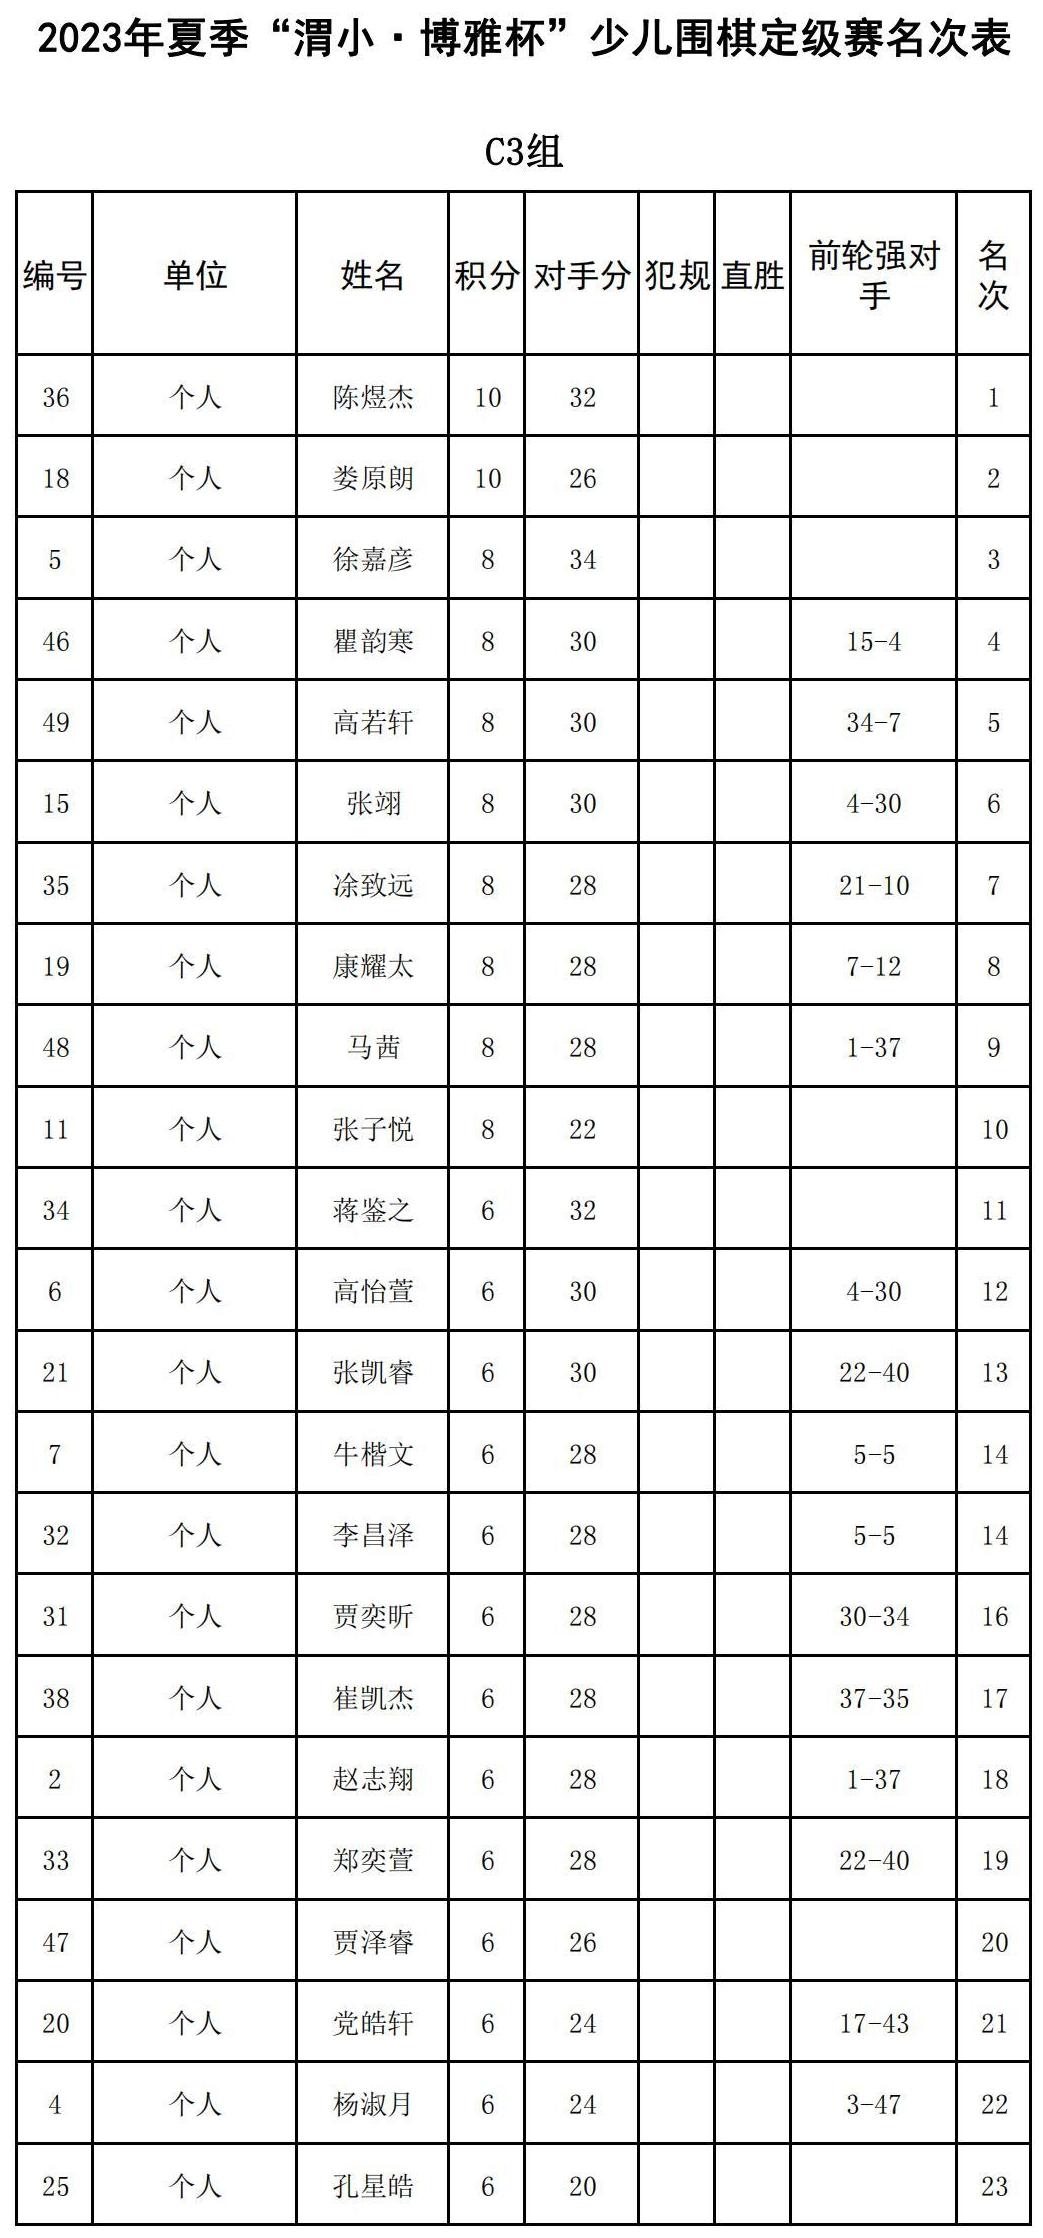 2023年夏季“渭小·博雅杯”少儿围棋定级赛C3组(名次表)_00.jpg